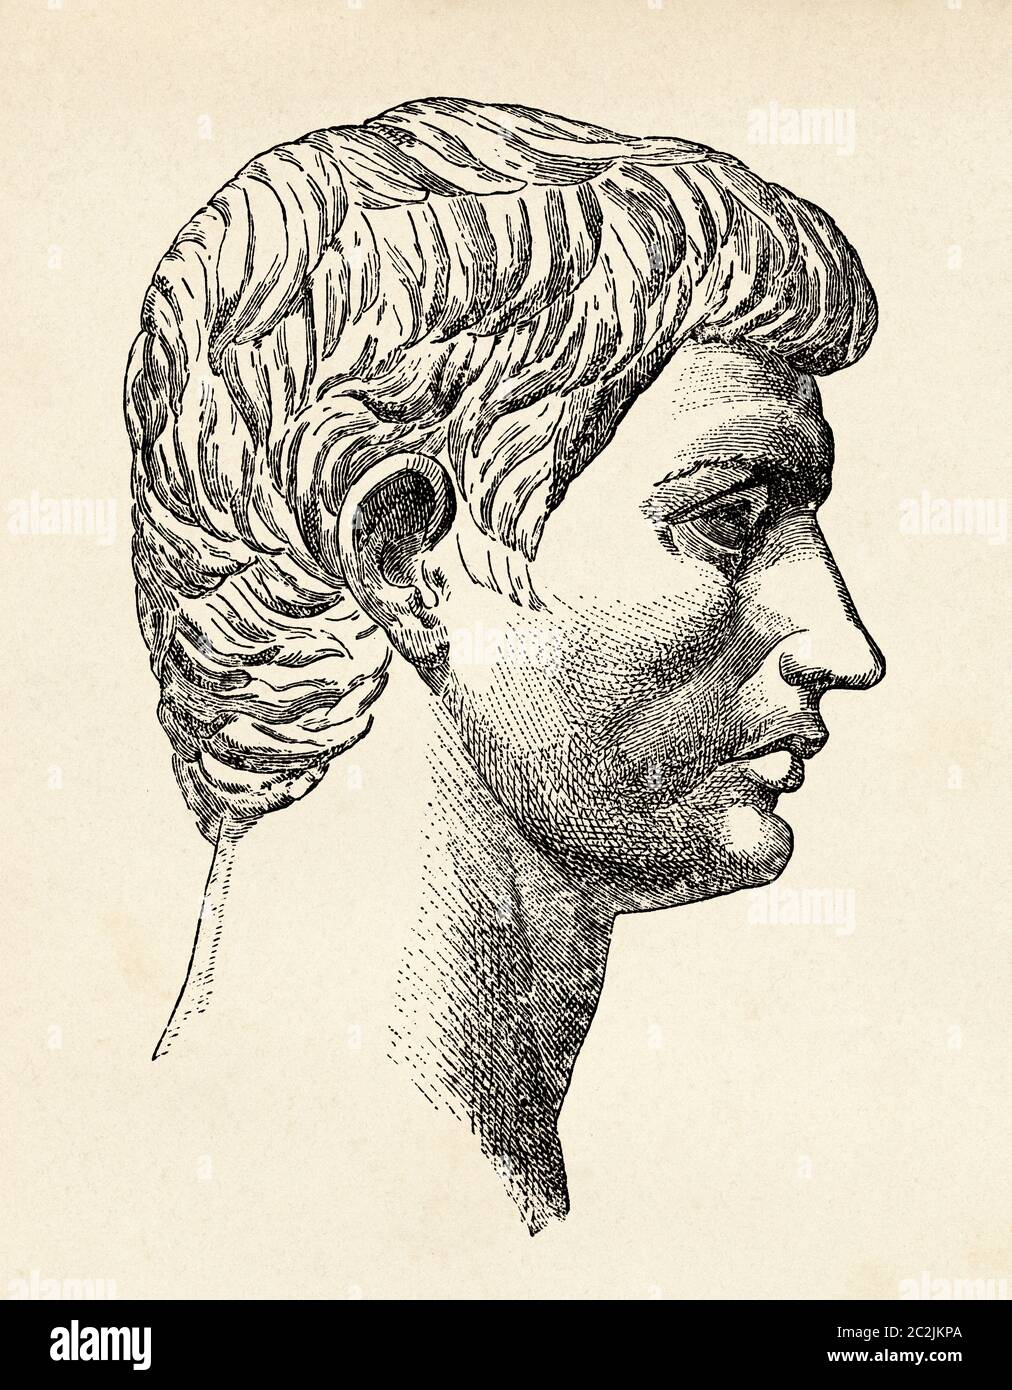 Portrait of Marcus Junius Brutus (85-42 BC), Roman politician, Ancient Rome. Old 19th century engraved illustration, El Mundo Ilustrado 1880 Stock Photo